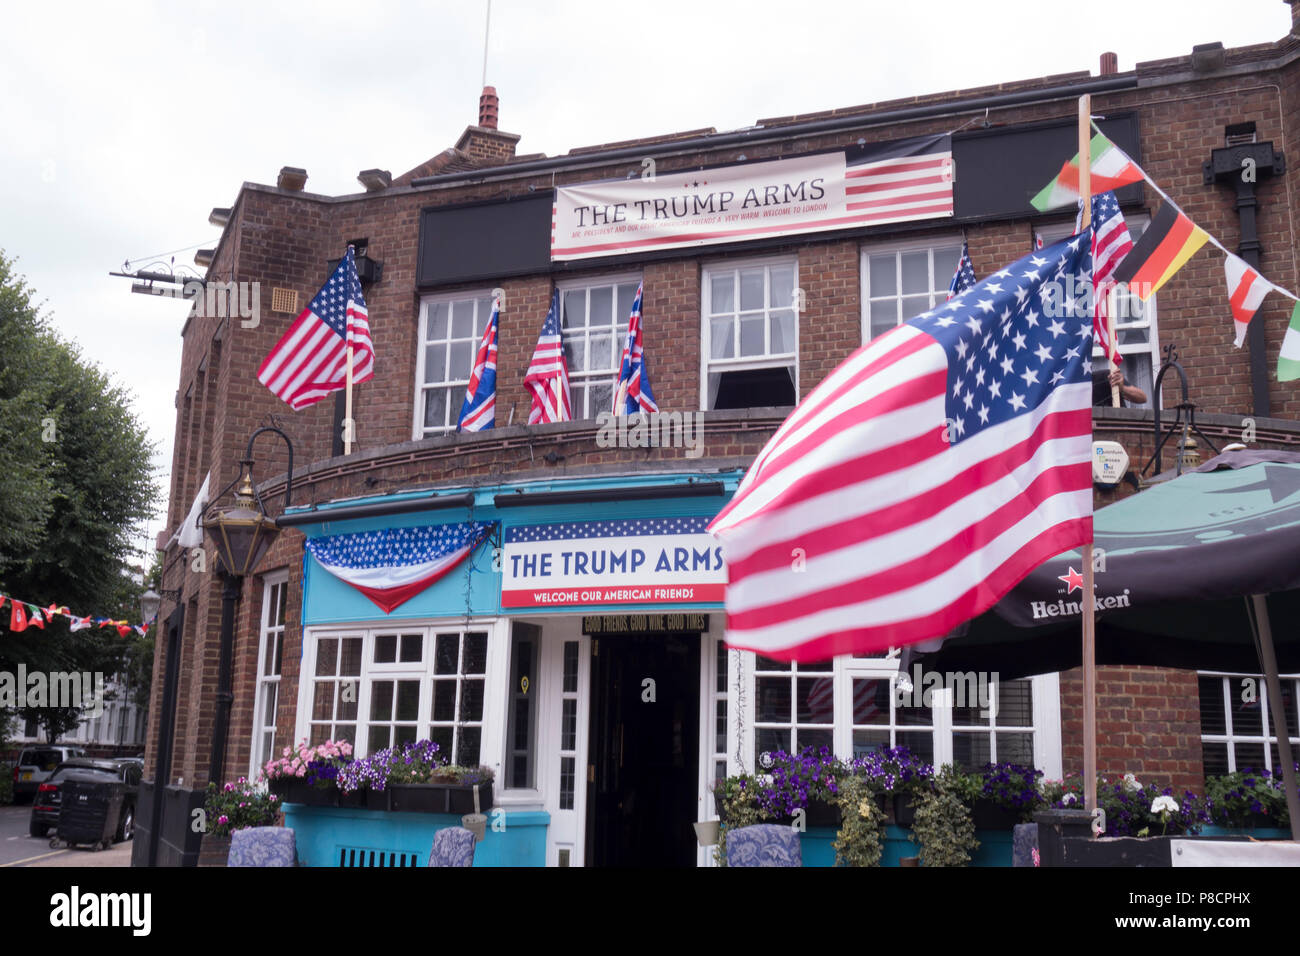 Londres, Royaume-Uni. 10 Juillet 2018 : La Pub Jamesons dans Kensington ouest change son nom pour "l'emporter sur les armes" à l'appui de la visite du président des États-Unis. Crédit : William Barton. Crédit : William Barton/Alamy Live News Banque D'Images